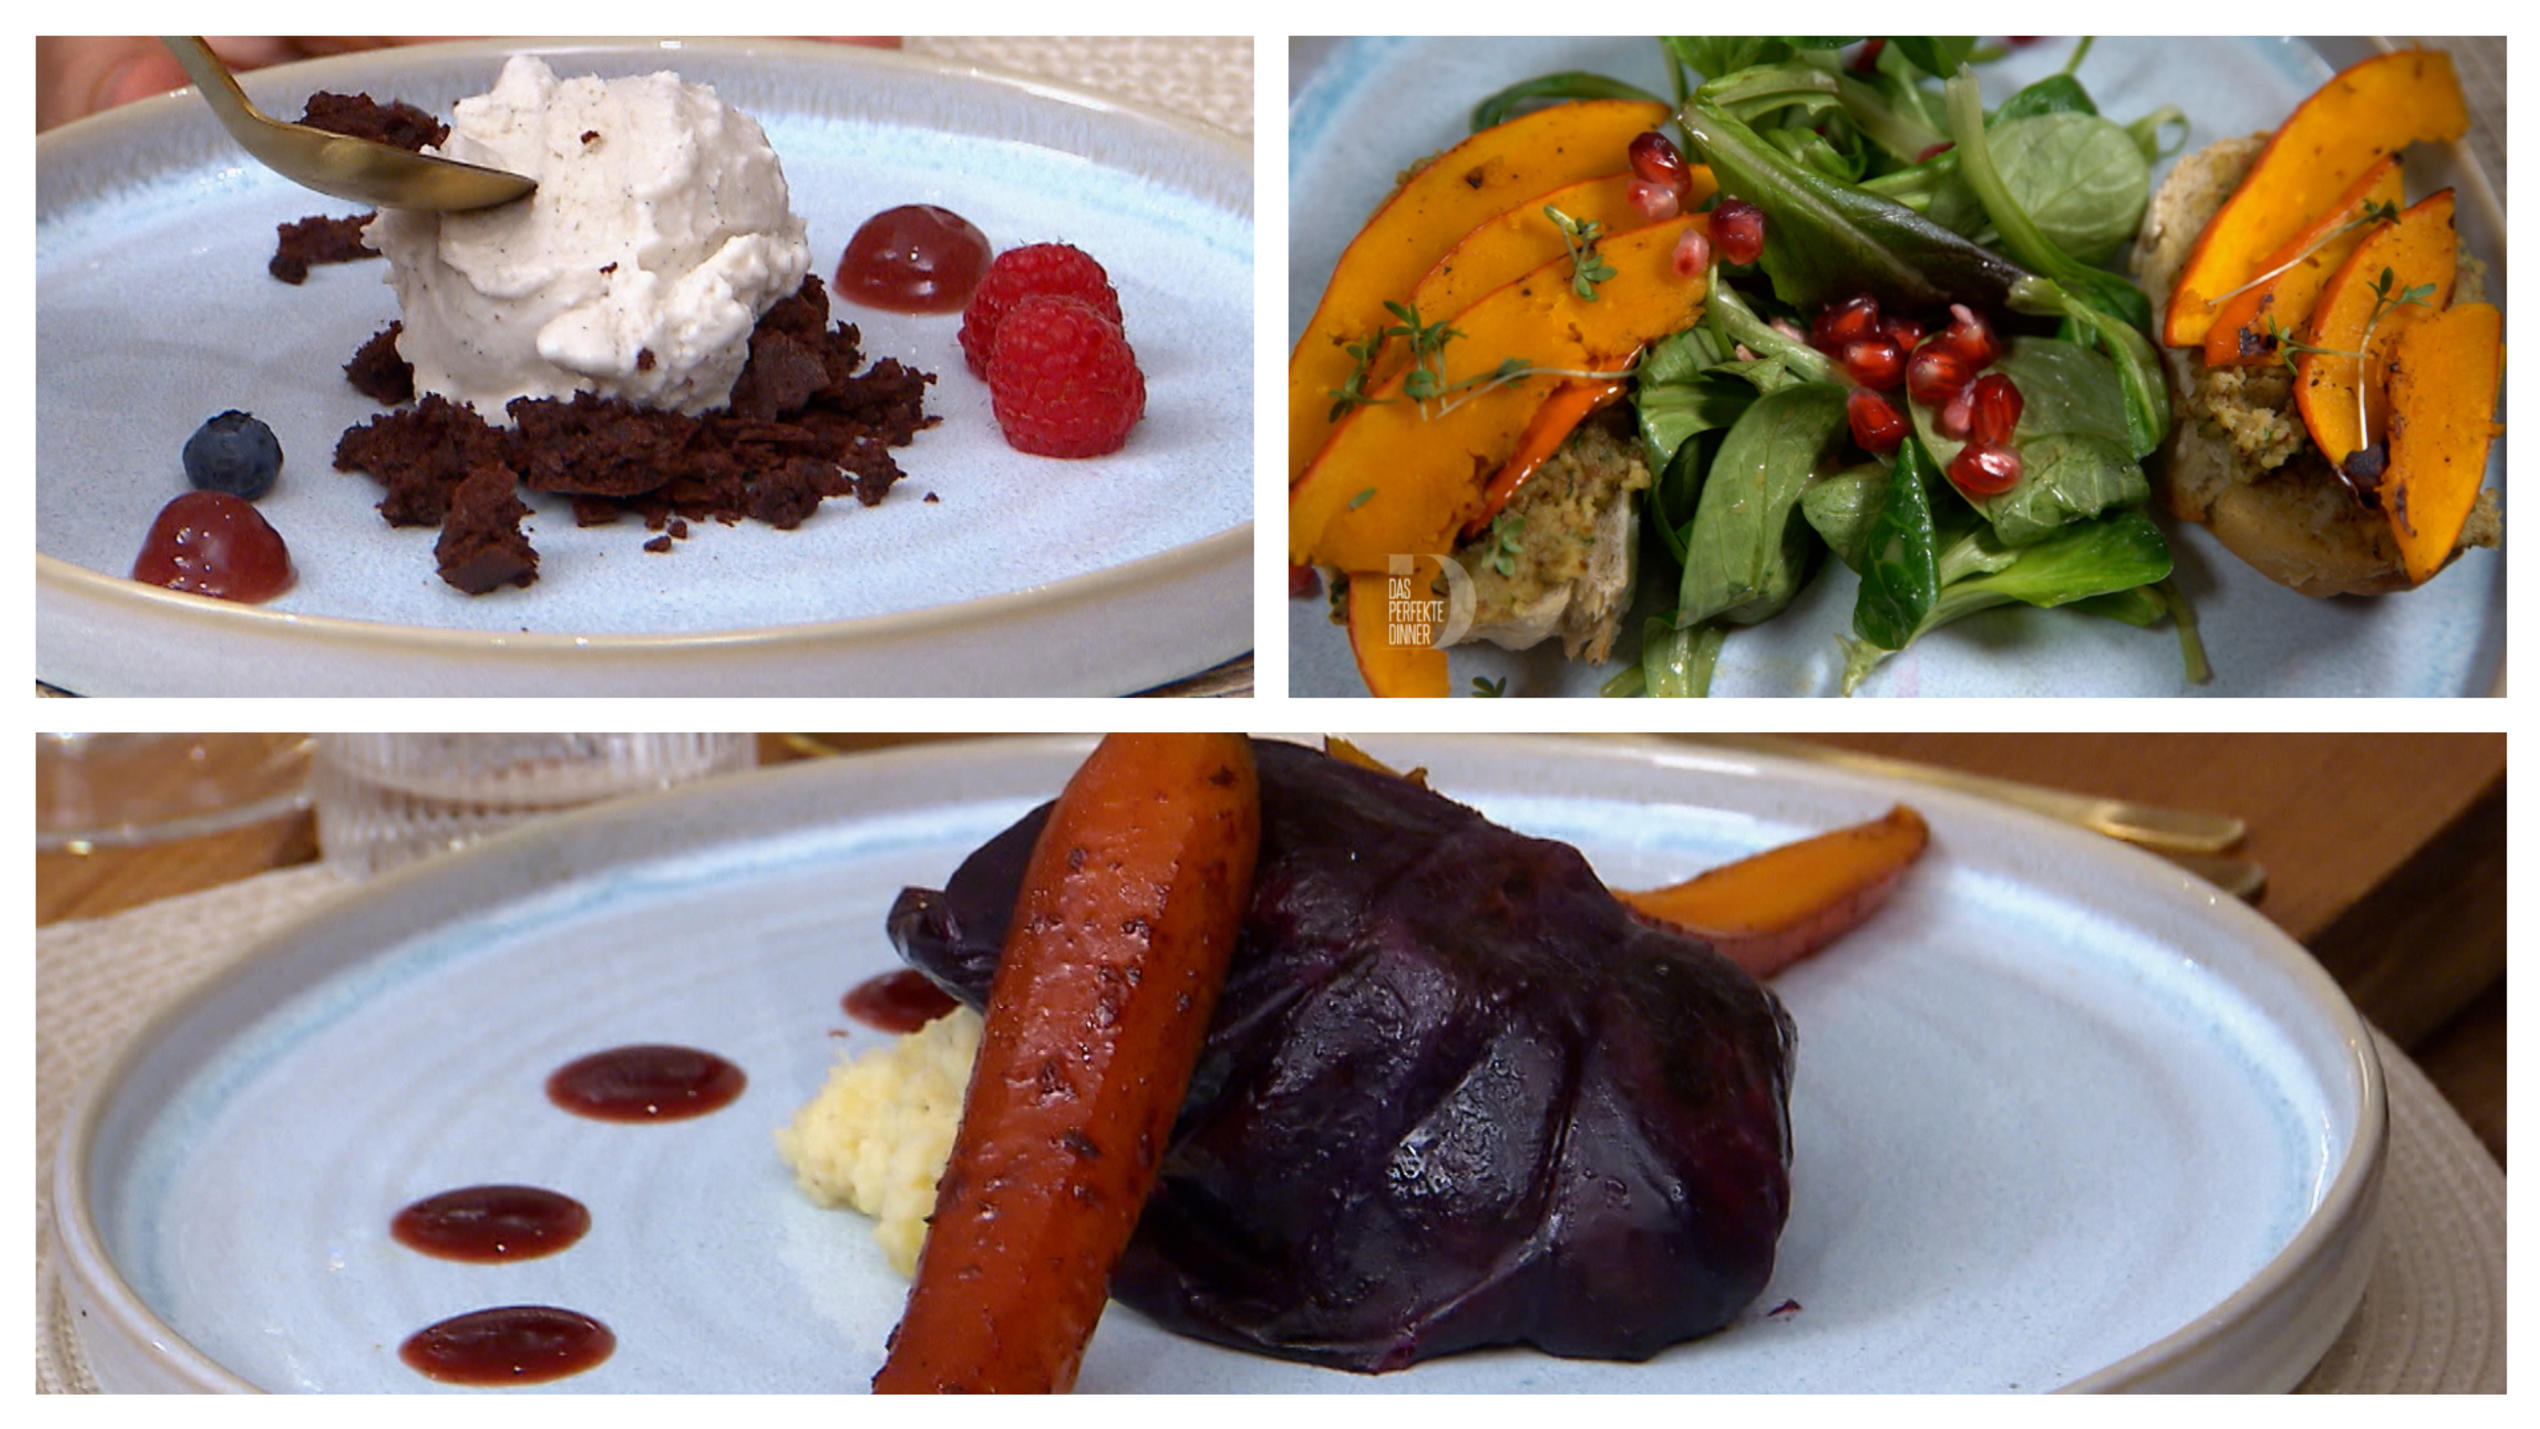 Die veganen Gerichte von Reva: Herbstliche Bruschetta (oben rechts), Kohlrouladen (unten) und Tonkabohneneis mit Brownie-Crumble und Beeren-Gel (oben links)